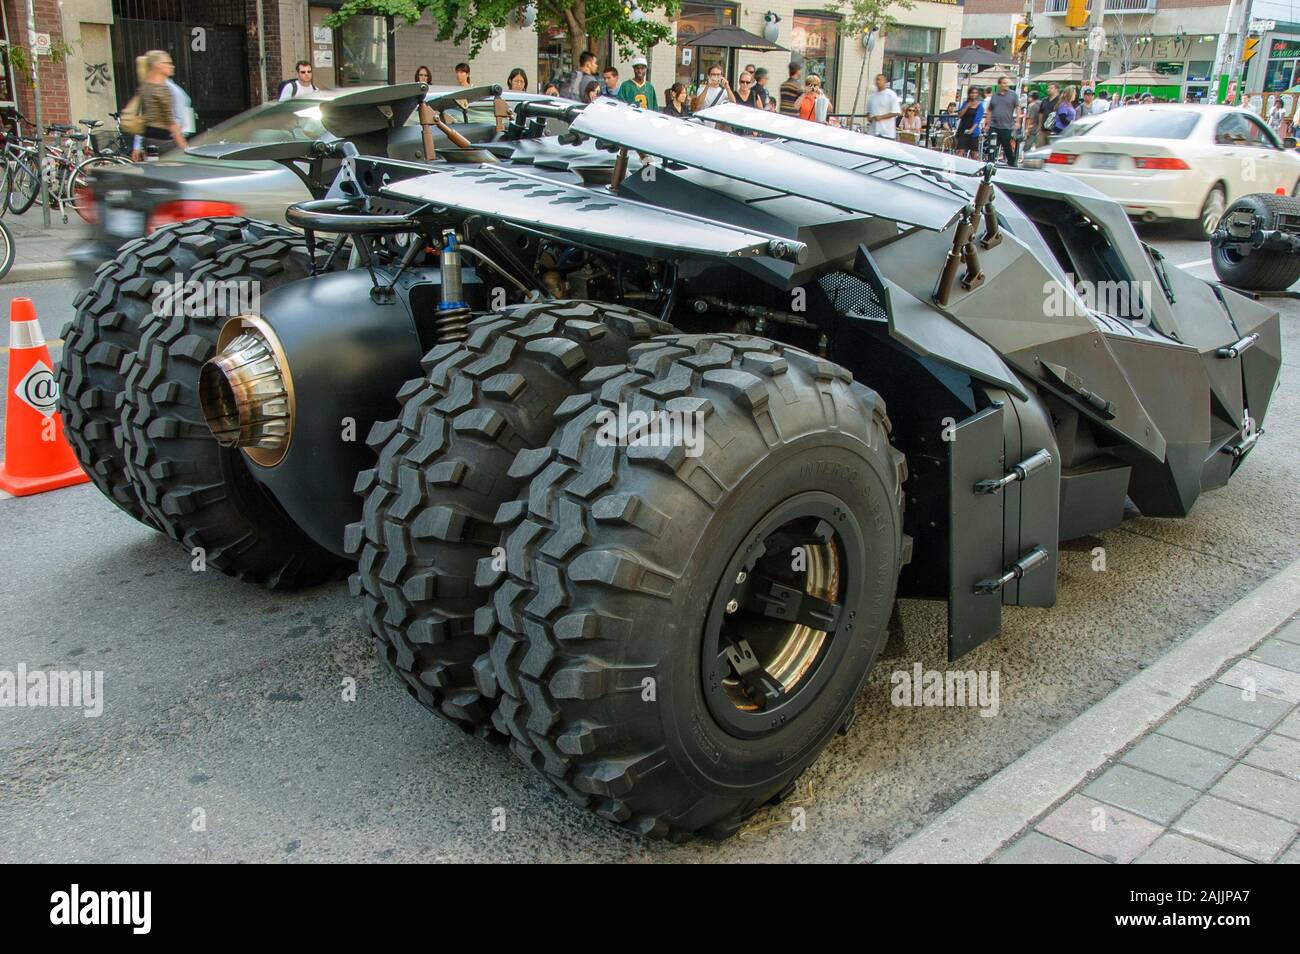 Batmobile utilisée dans la suite de Batman The Dark Knight, visiter la ville de Toronto pour une campagne de promotion. Banque D'Images